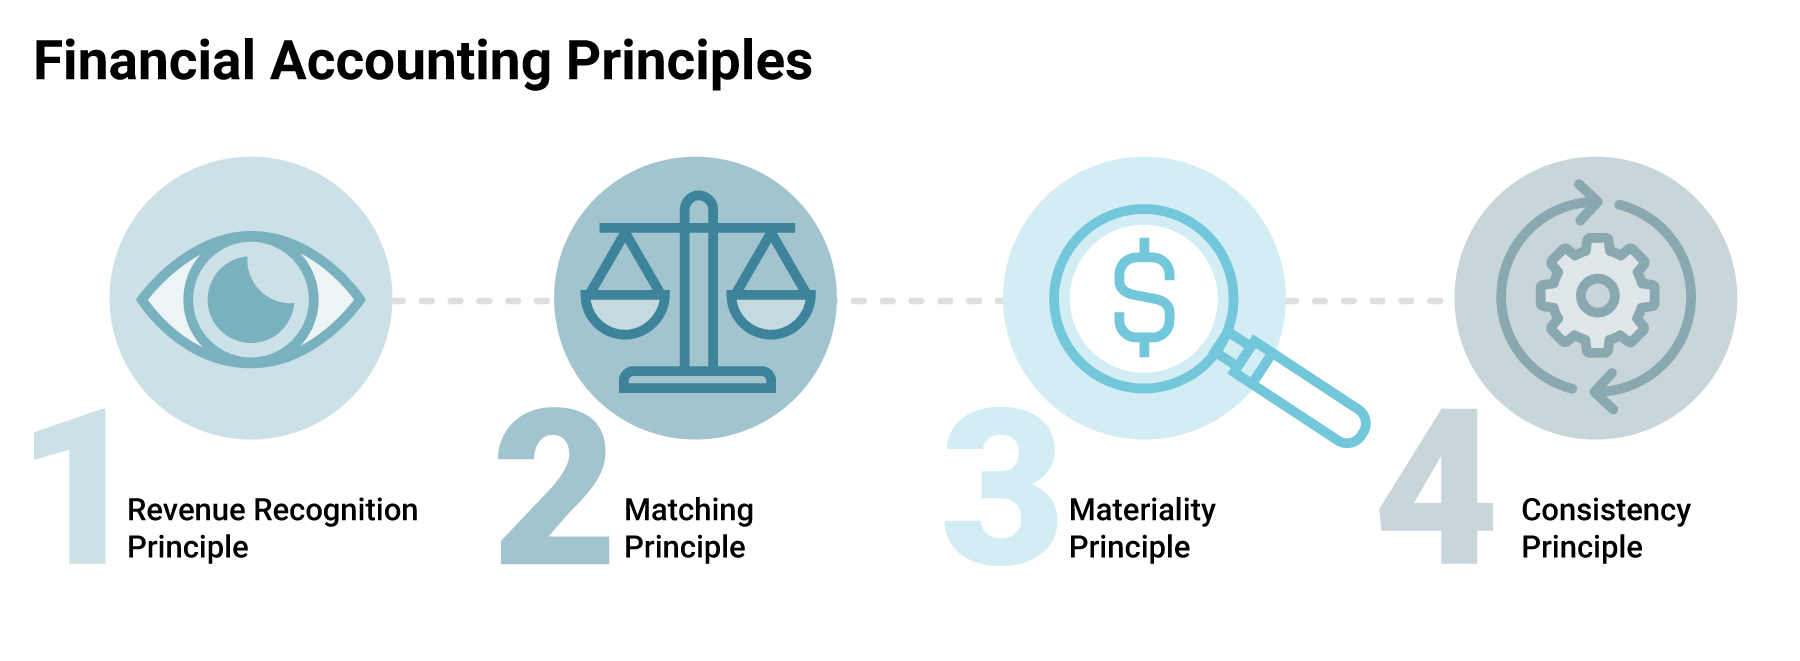 Principios de contabilidad financiera